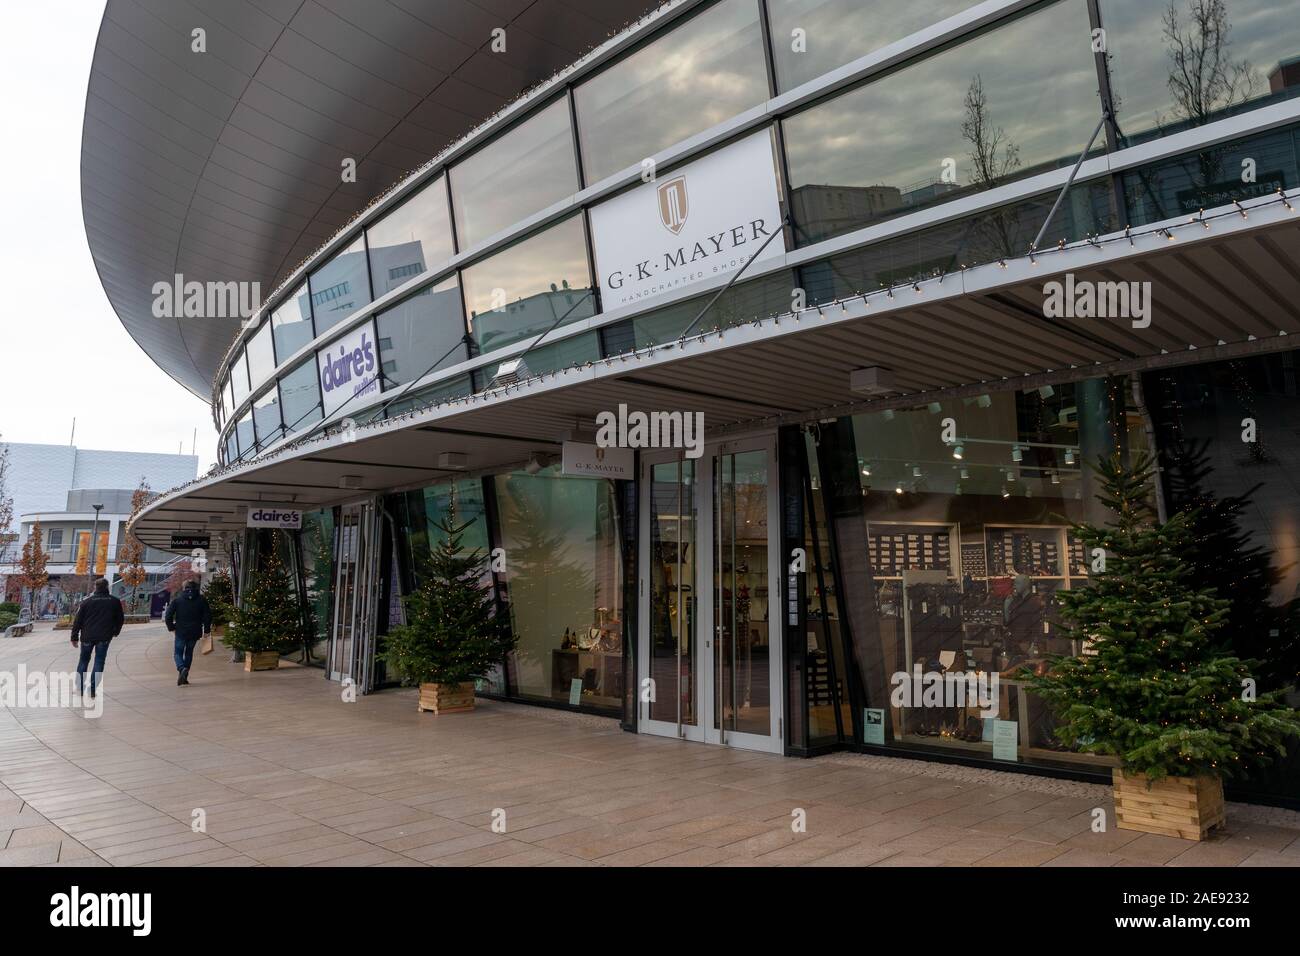 Wolfsburg, Allemagne - le 5 décembre 2019 : Designer Outlets est un outlet village en ville de Wolfsburg. Boutiques de se préparer pour les ventes saisonnières. Aussi G.K.Mayer Banque D'Images